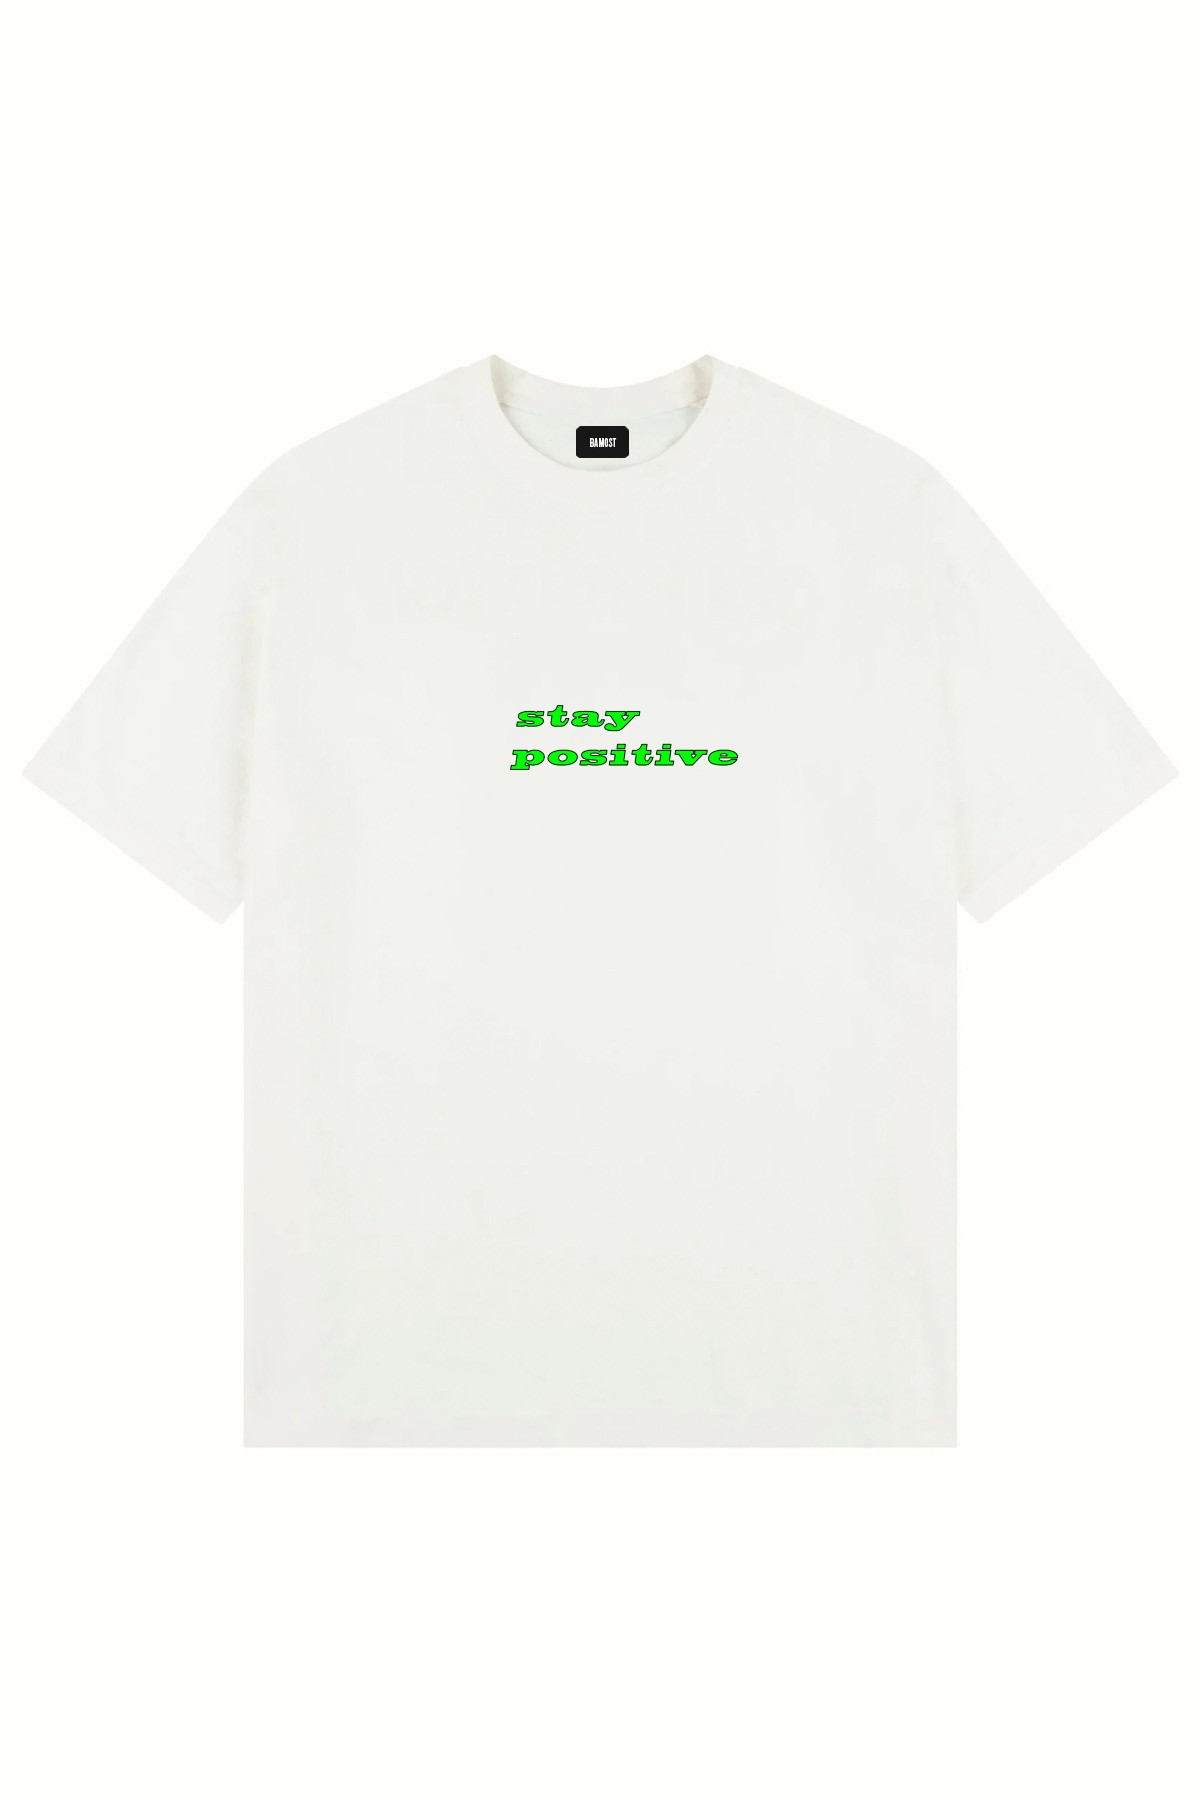 2025 - Oversize Baskılı T-Shirt - BEYAZ